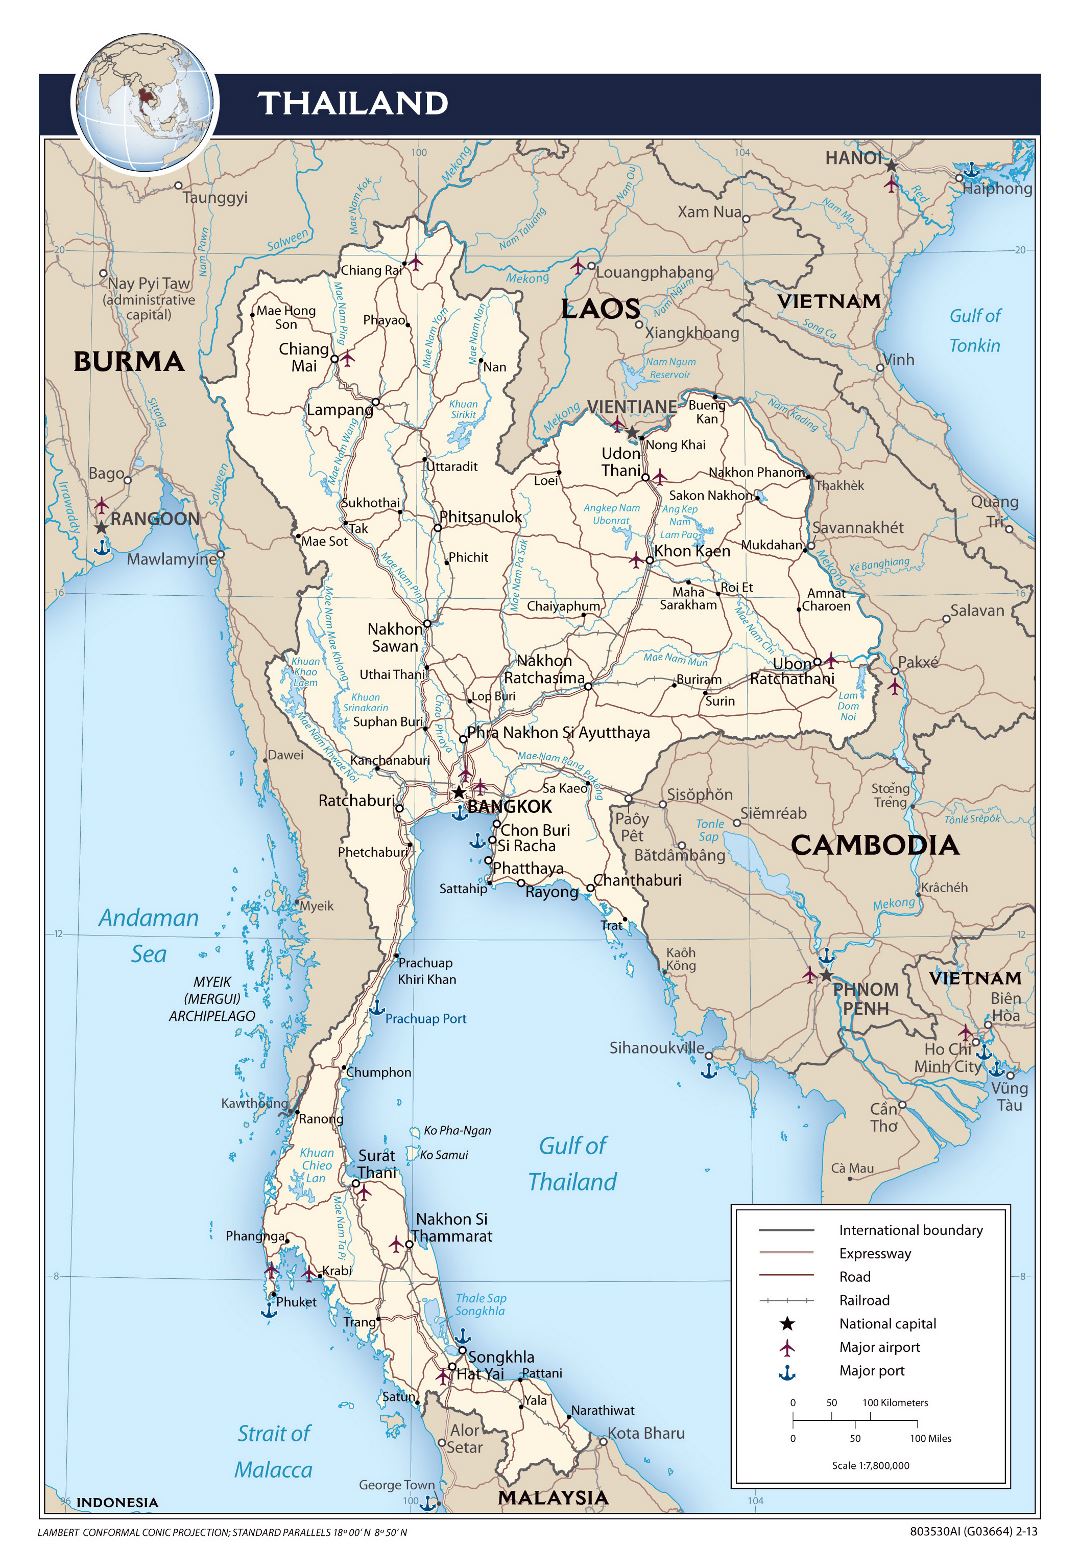 Большая политическая карта Таиланда с дорогами, железными дорогами, крупными городами, аэропортами и портами - 2013